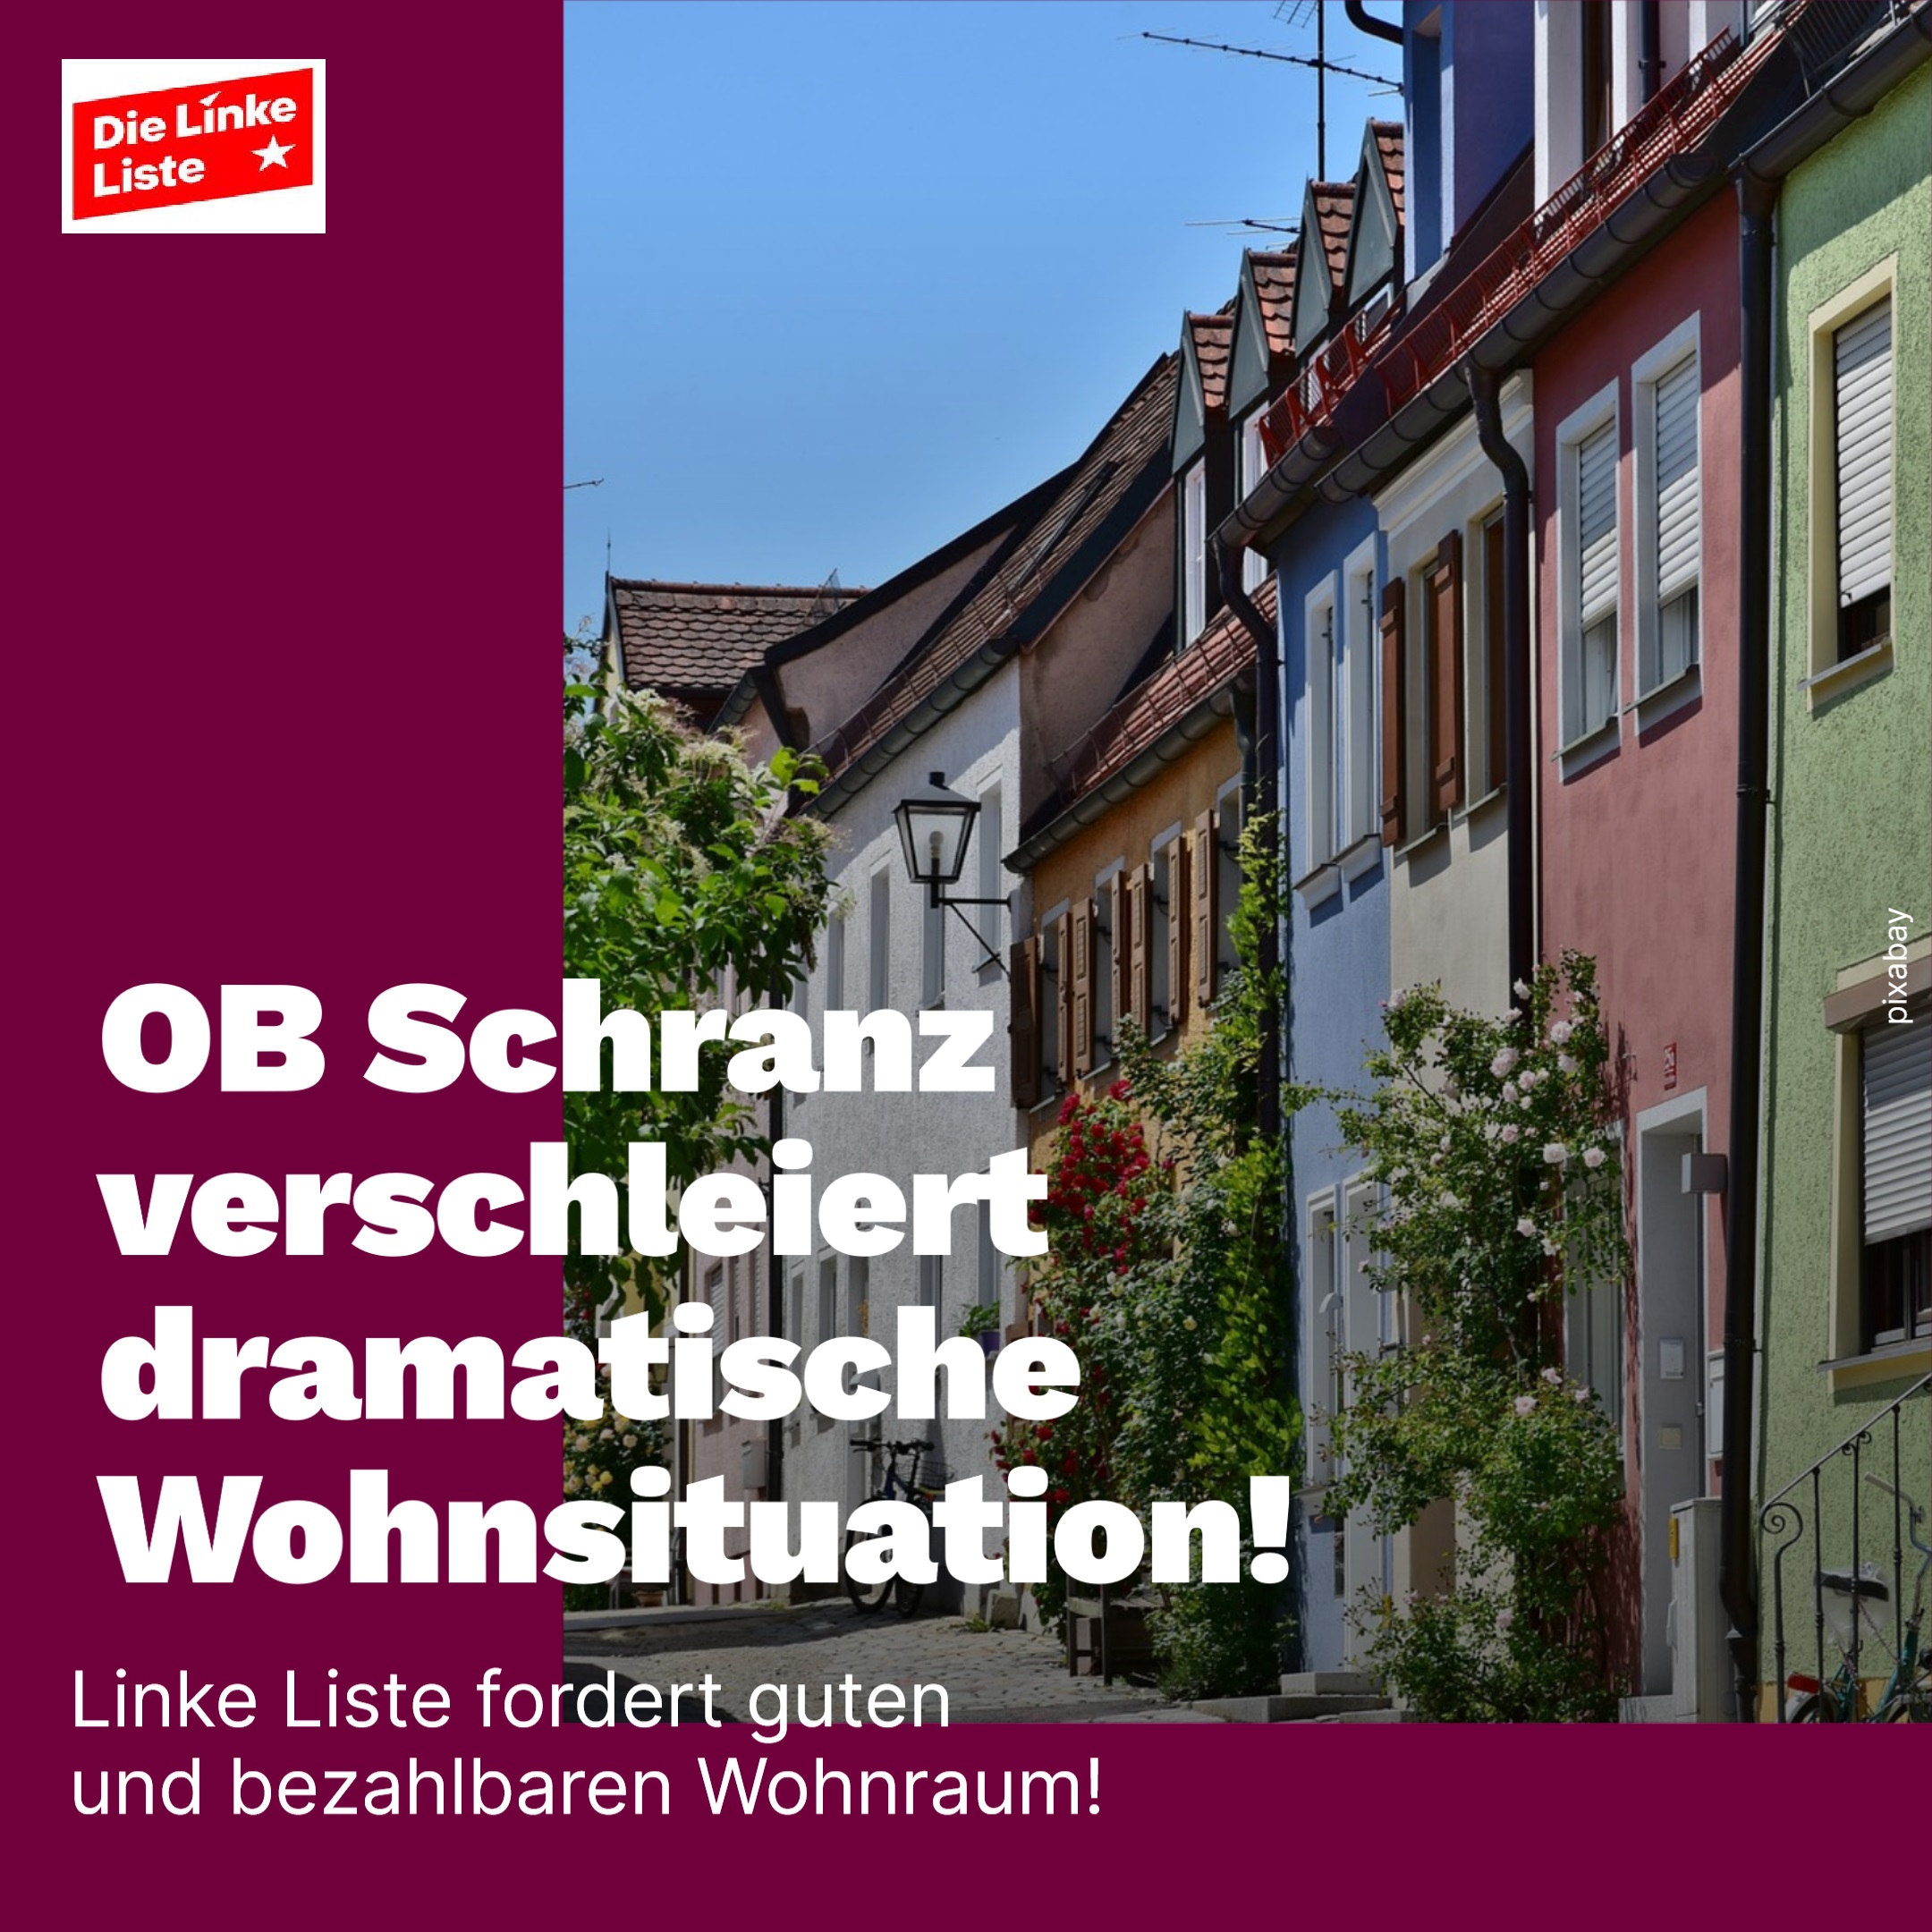 OB Schranz verschleiert dramatische Wohnungssituation – Linke Liste fordert guten und bezahlbaren Wohnraum